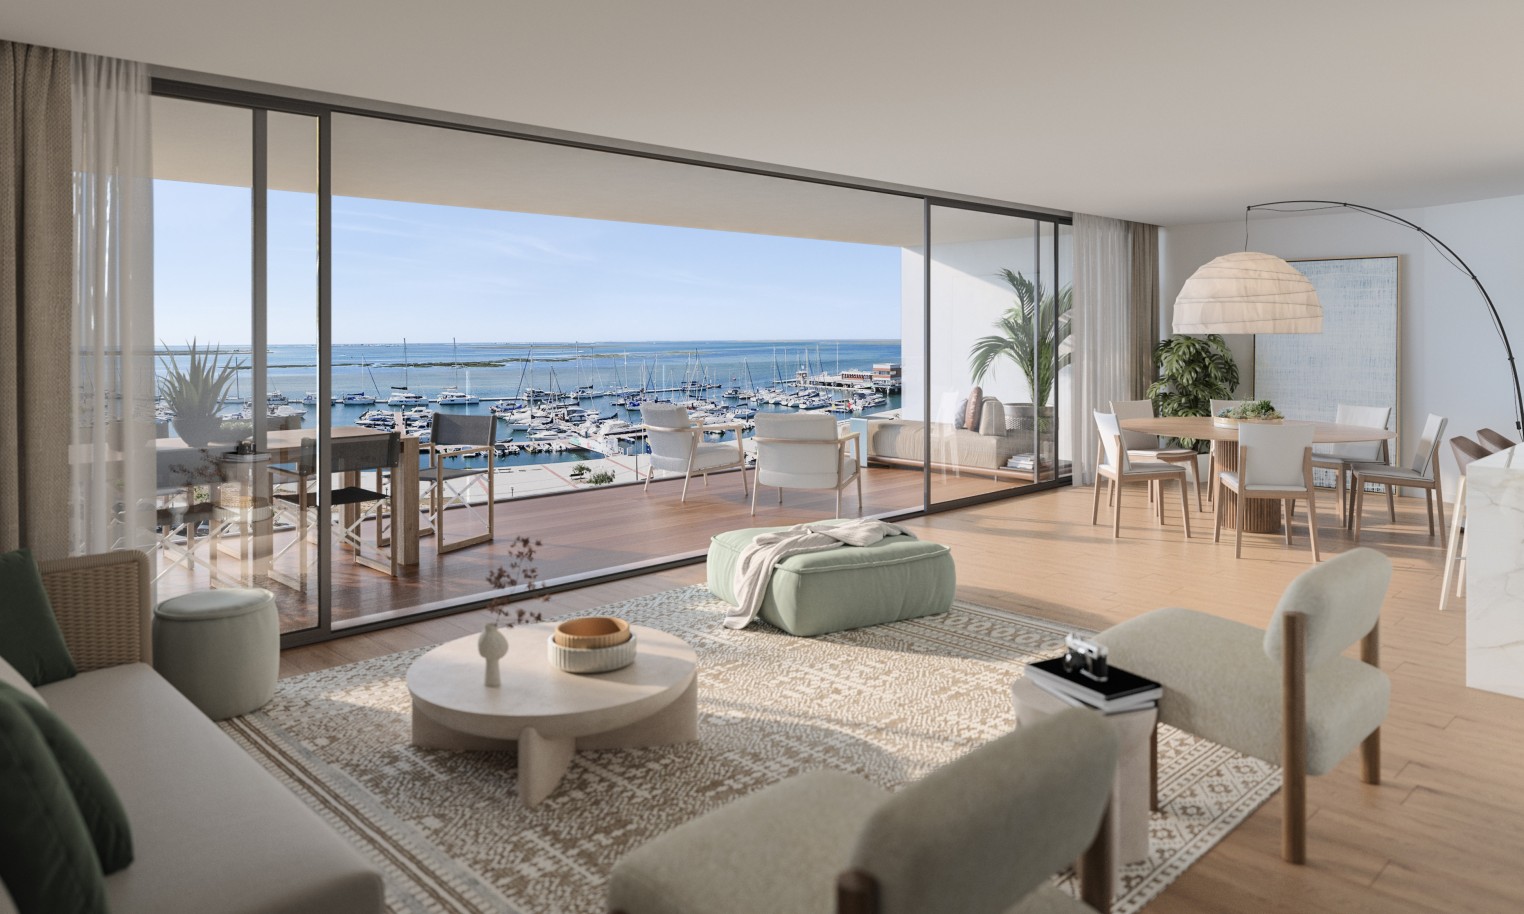 Appartements neufs avec vue sur mer, 1, 2 & 3 chambres, à vendre à Olhão, Algarve_244193